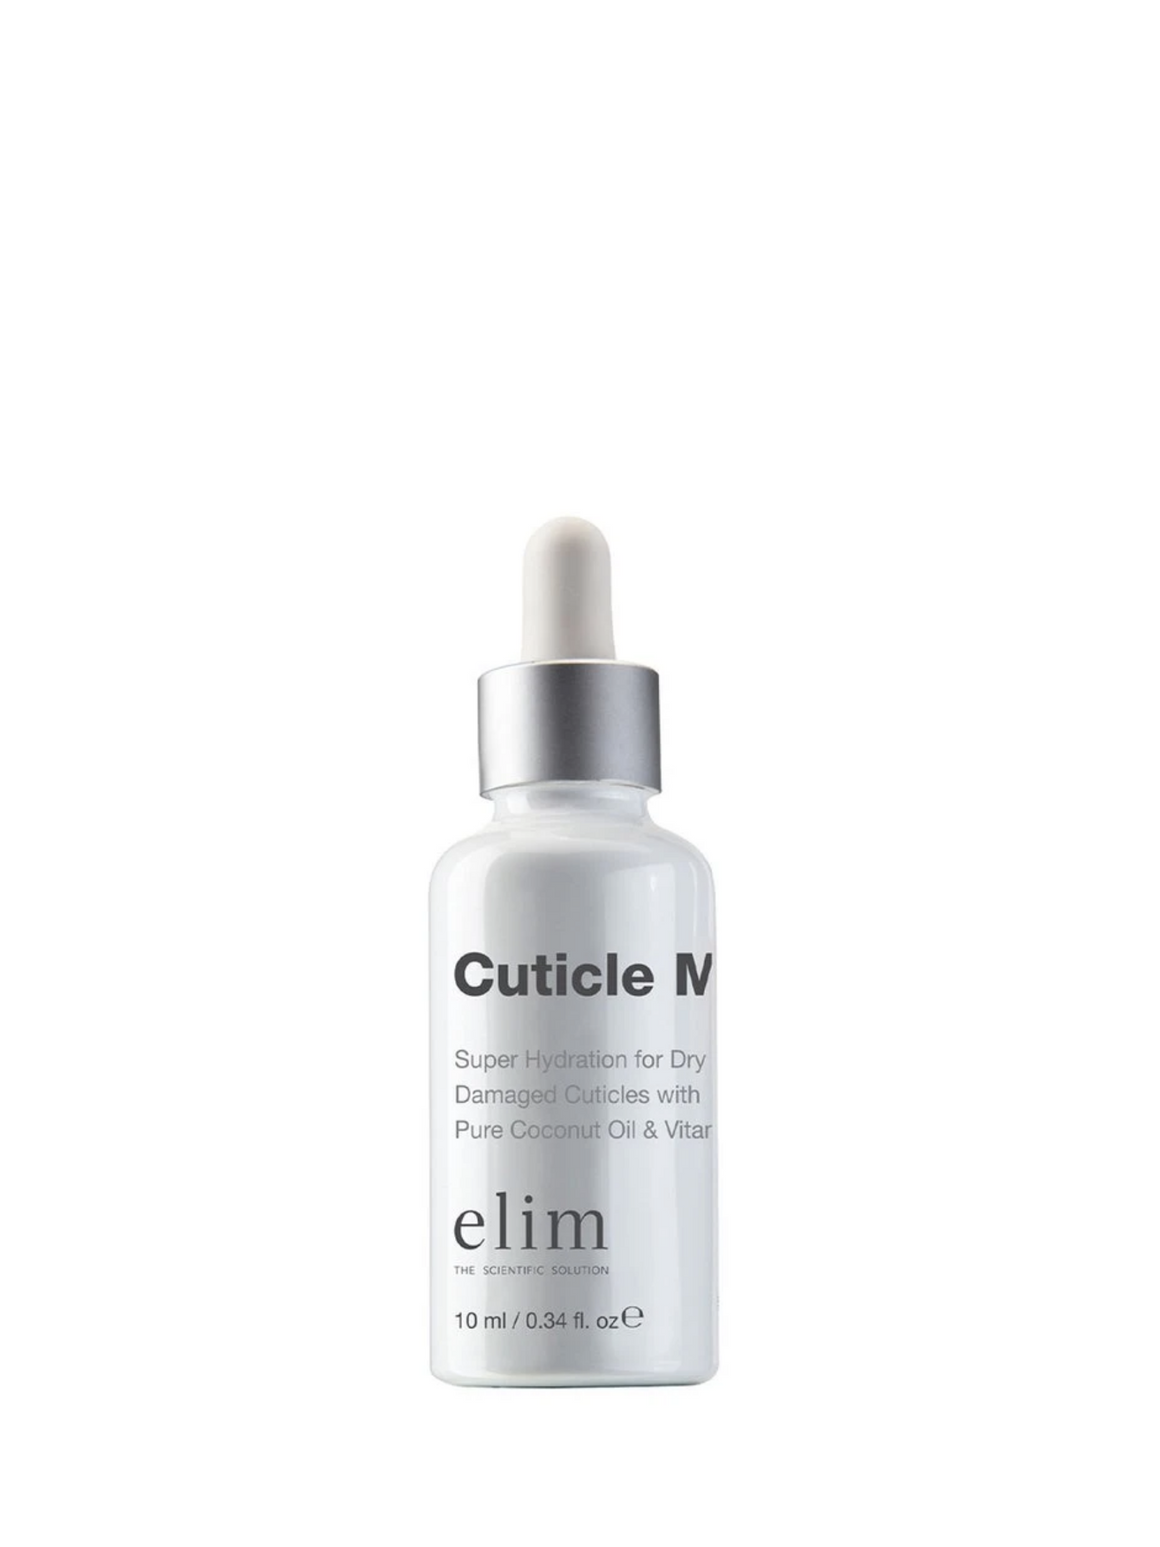 ELIM Cuticle MD 10ml